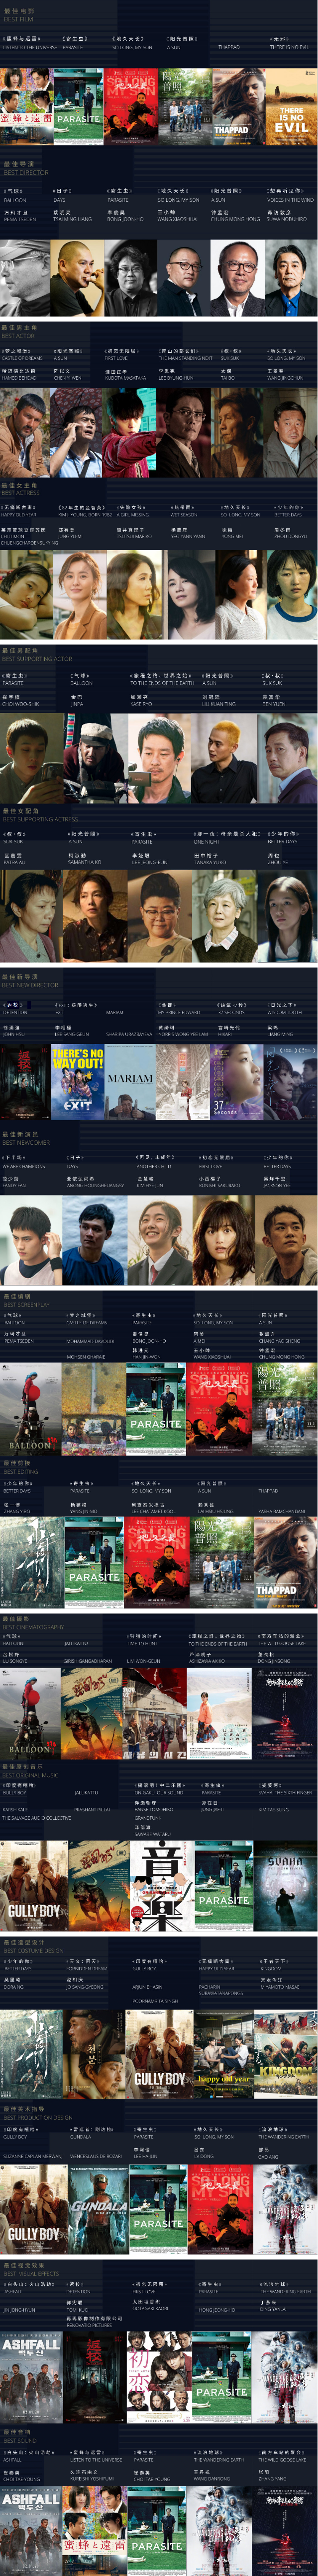 第14届亚洲电影大奖公布入围名单什么情况?附最全完整名单!